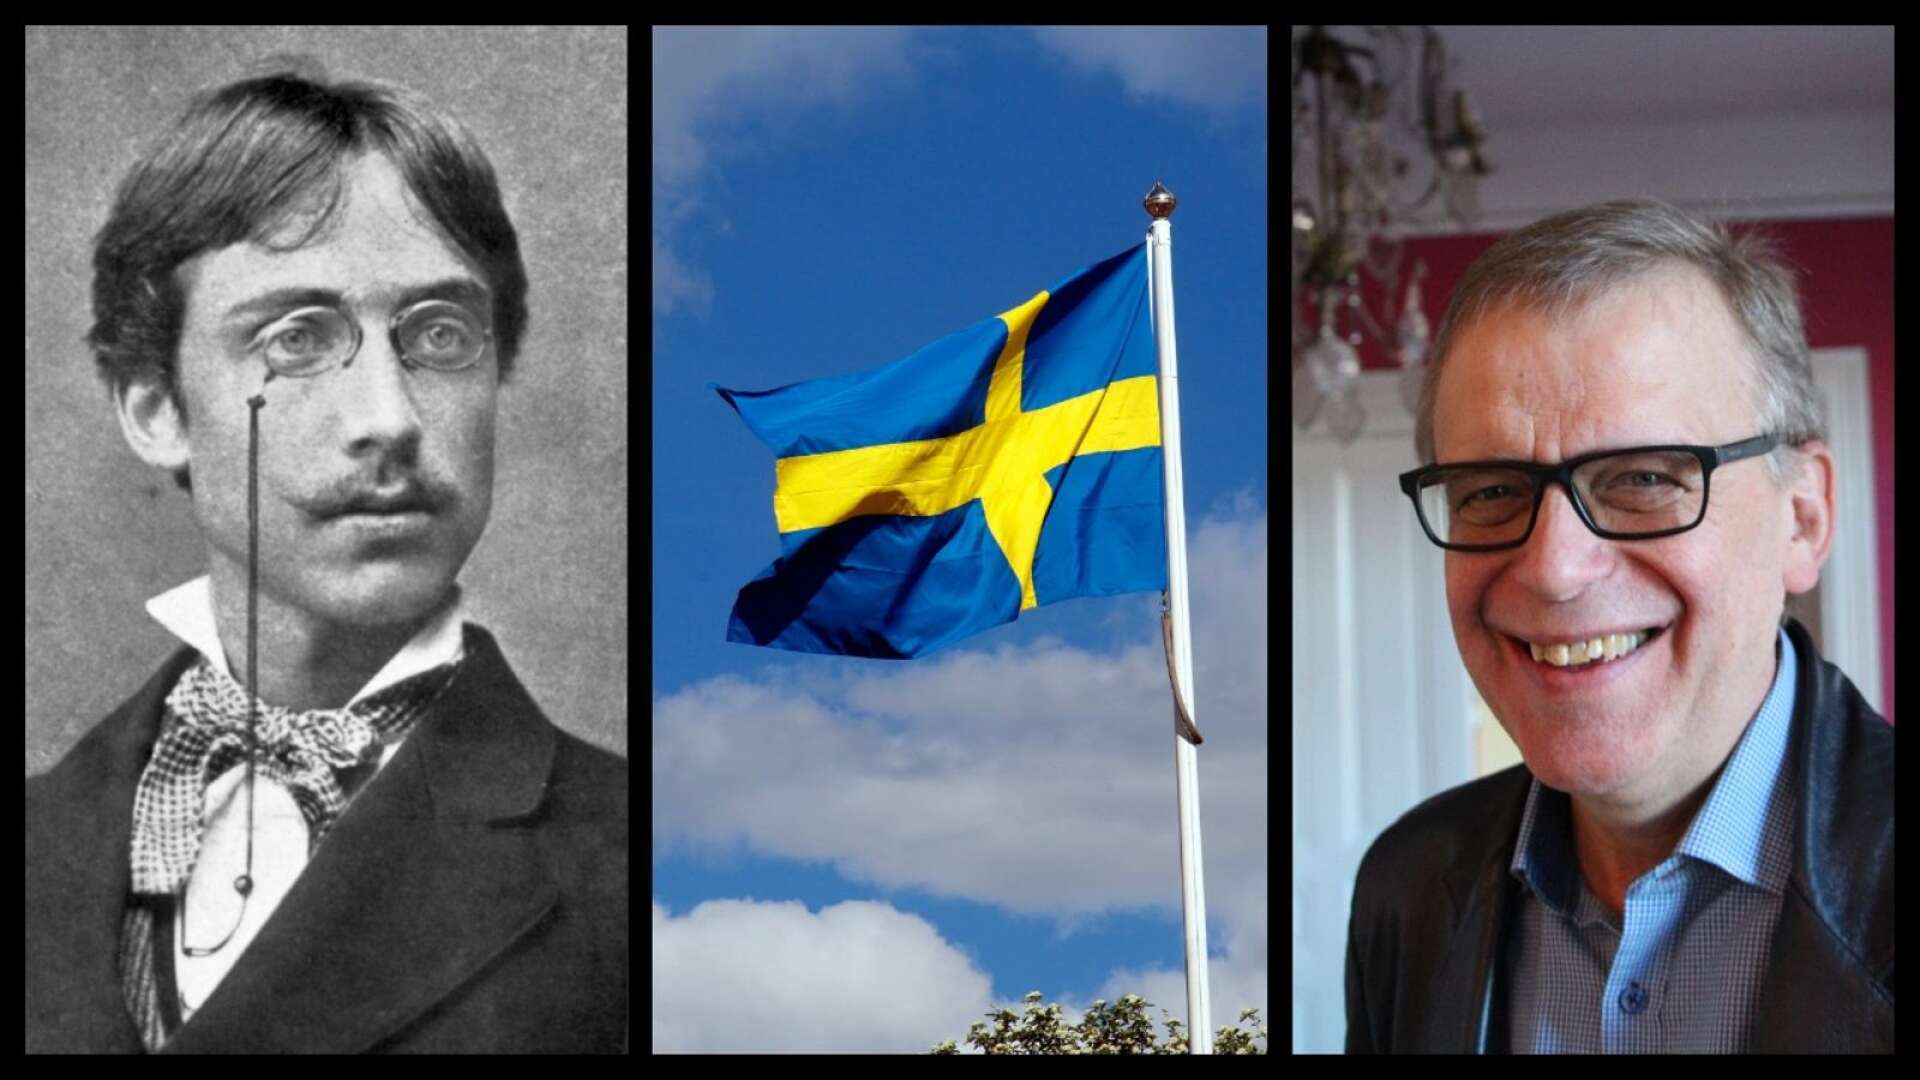 På lördag, den 22 augusti, är det 160 år sedan Gustaf Fröding föddes. Det vill hans minnessällskap fira med allmänt flaggande i Karlstad.